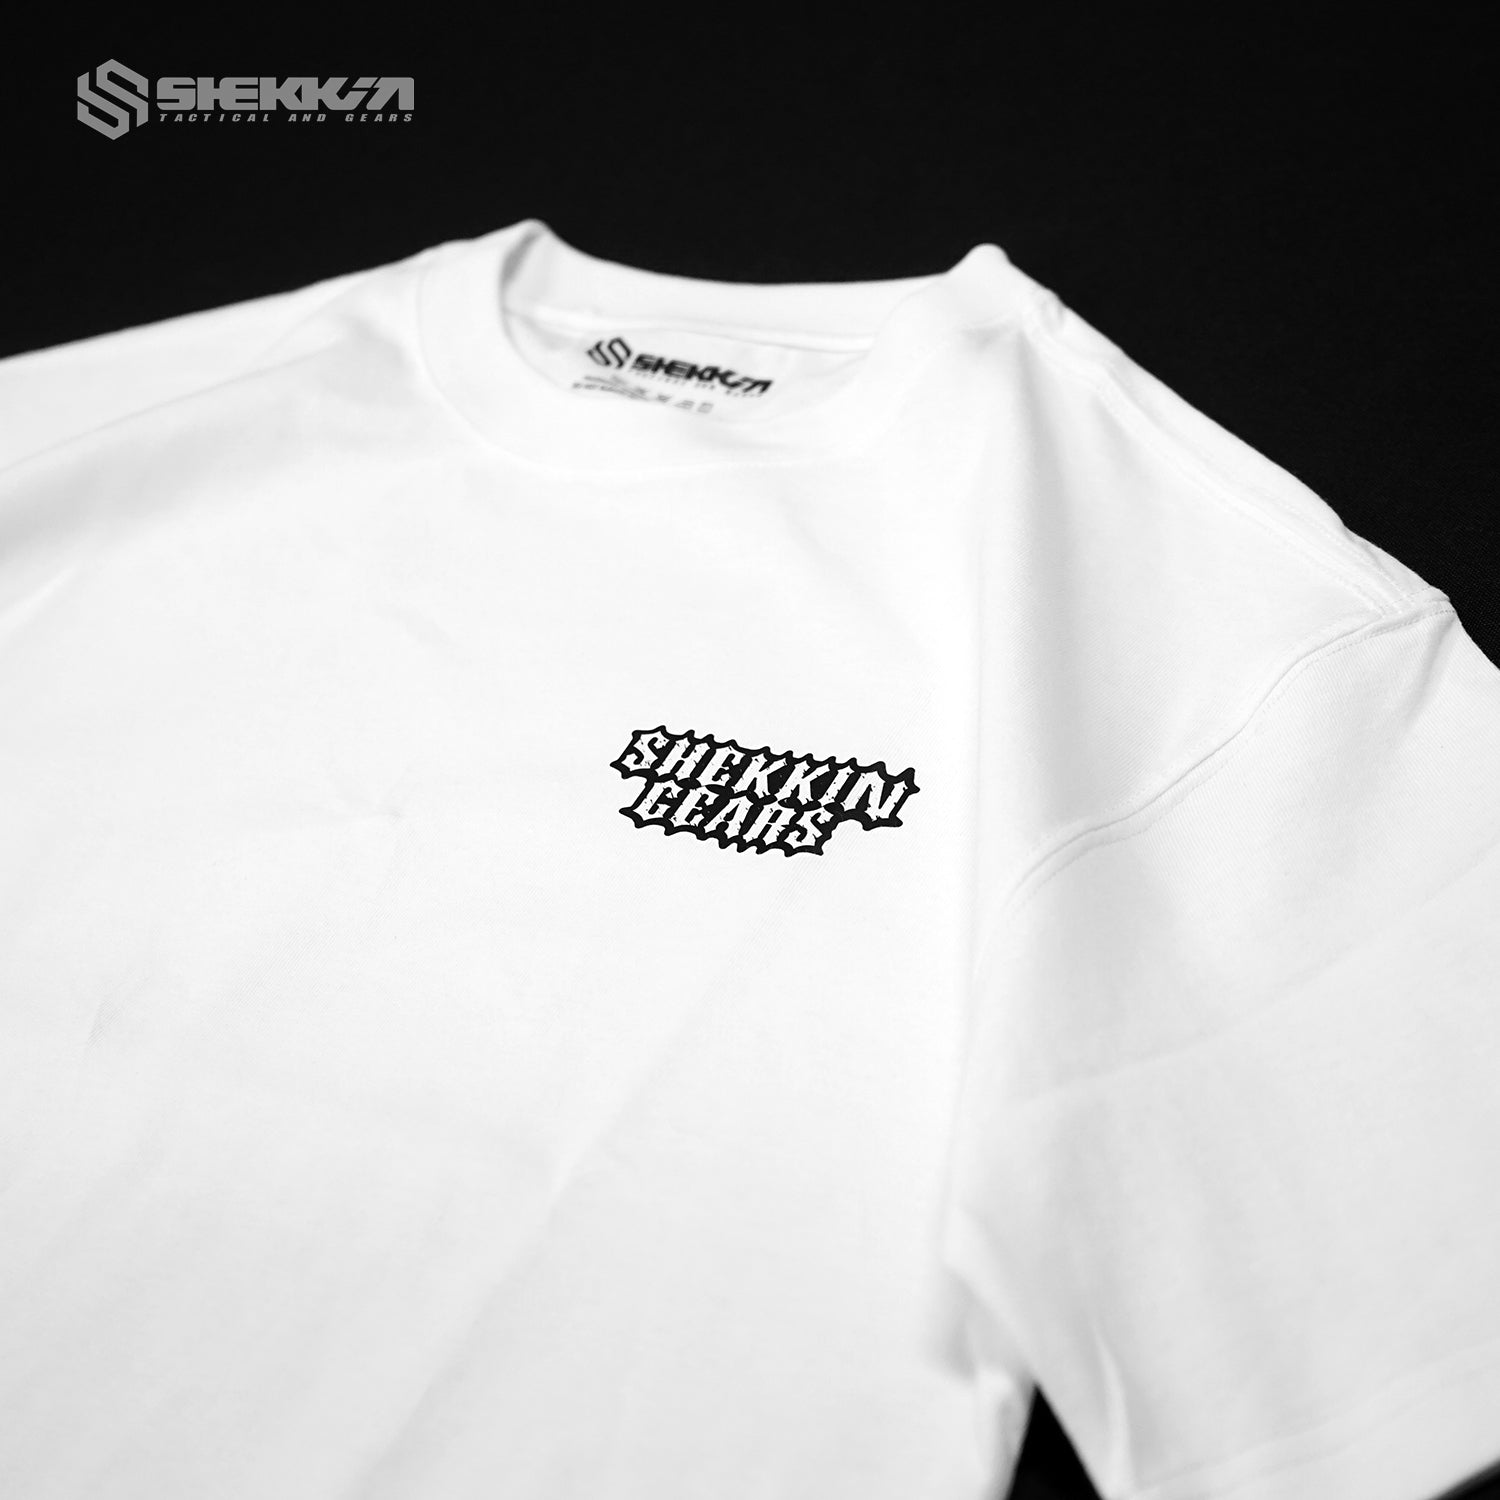 Shekkin Gears T-shirt - Shekkin Gears